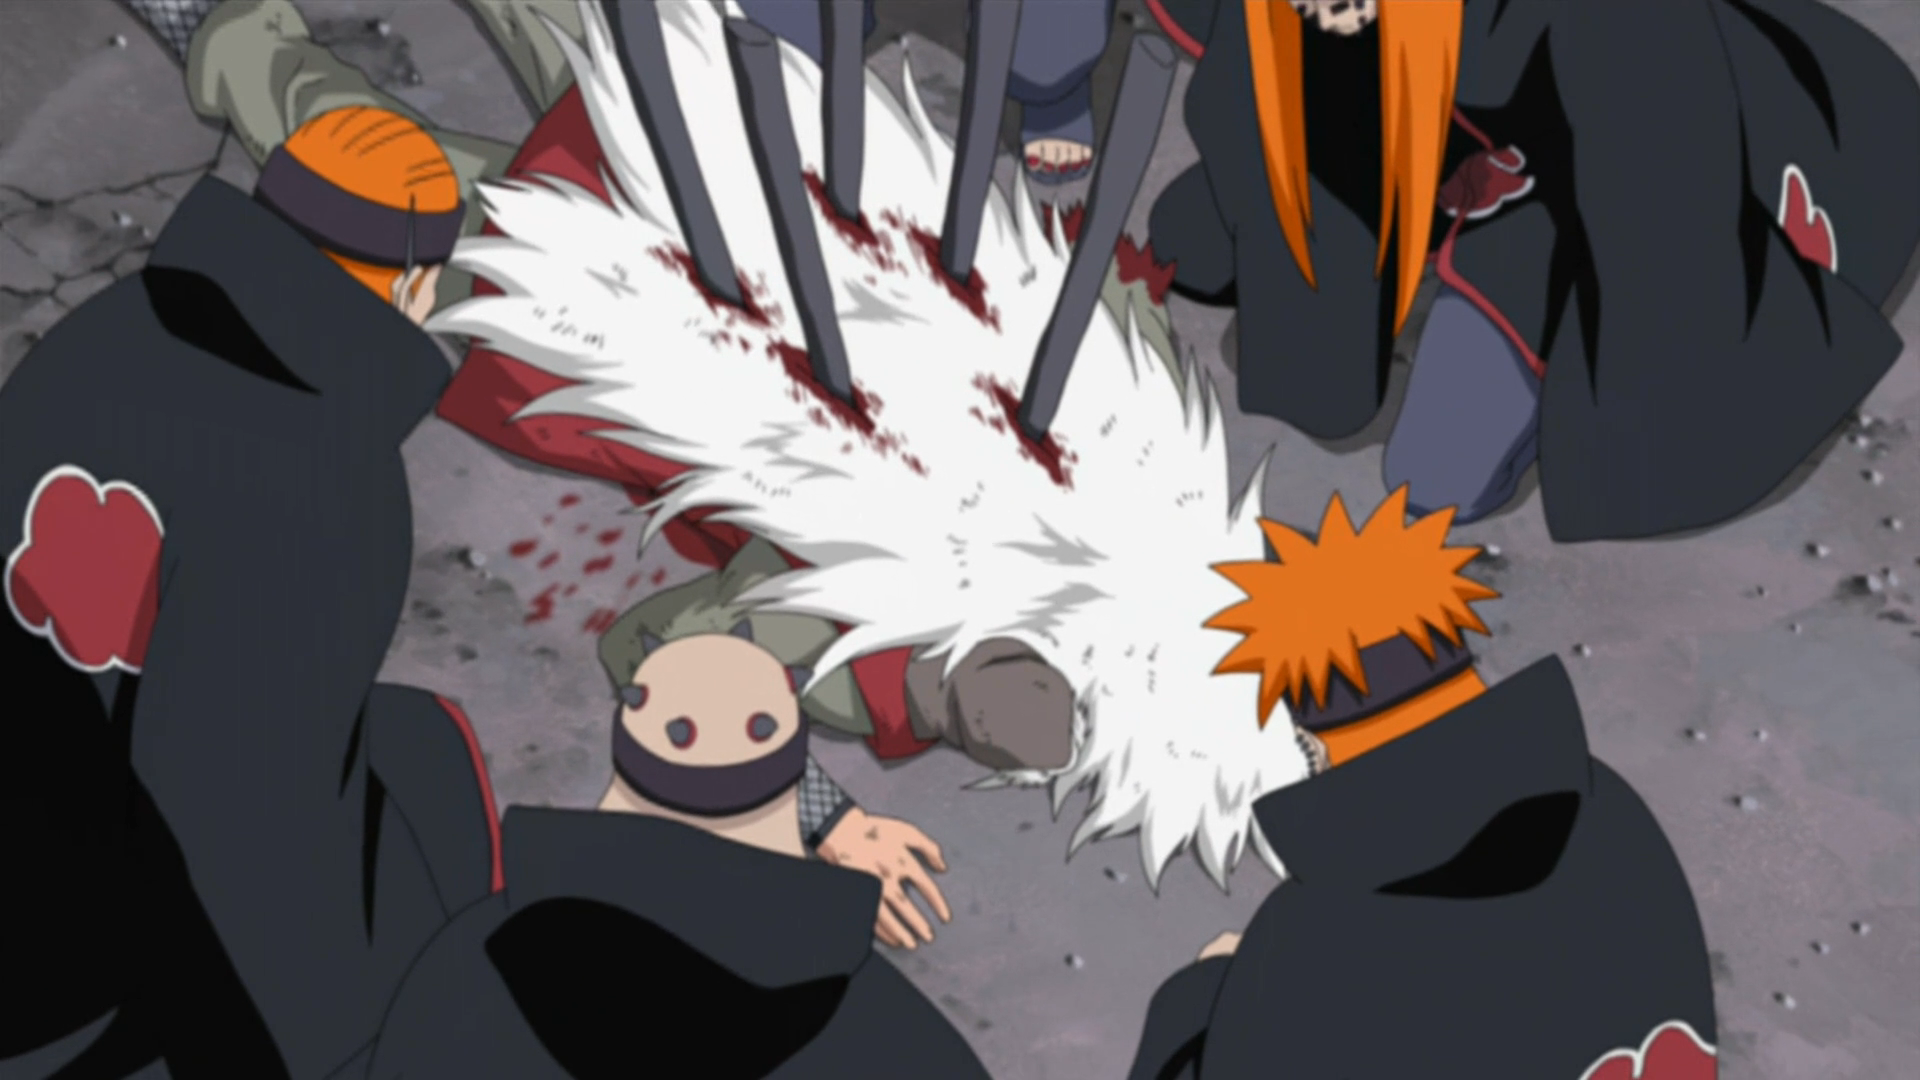 Pain: História, origem e poderes de Nagato em Naruto